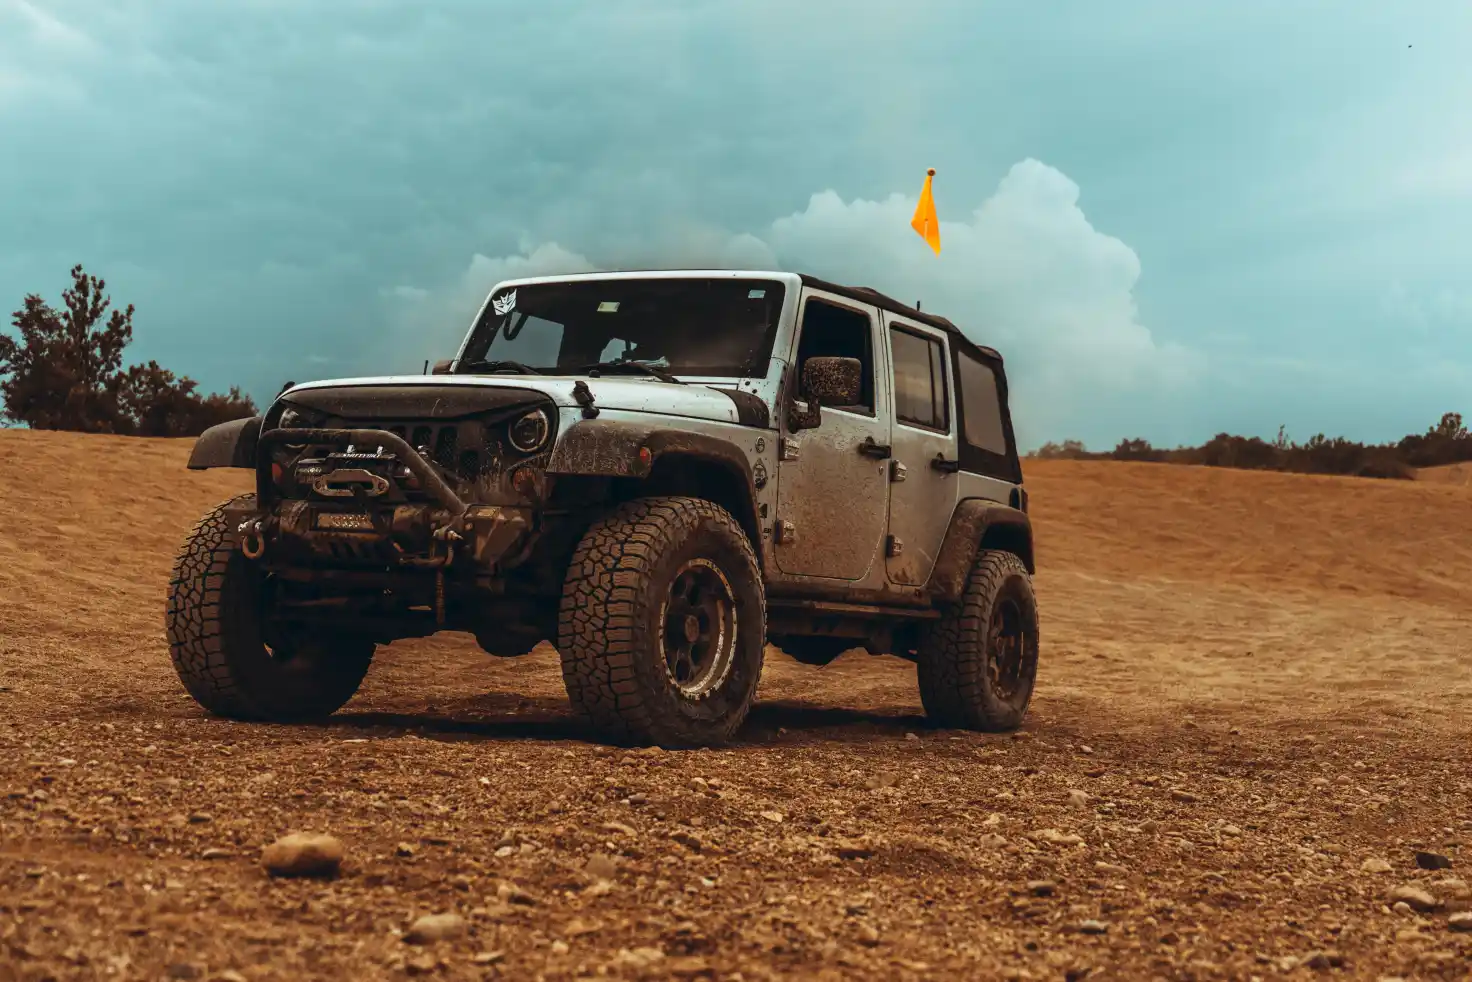 Memilih Ban Off-Road Terbaik untuk Jeep Wrangler Untuk Meningkatkan Performa. Temukan analisis komprehensif tentang pilihan ban off-road yang cocok untuk Jeep Wrangler Anda. Dapatkan informasi tentang jenis, merk, dan faktor lainnya yang perlu dipertimbangkan.